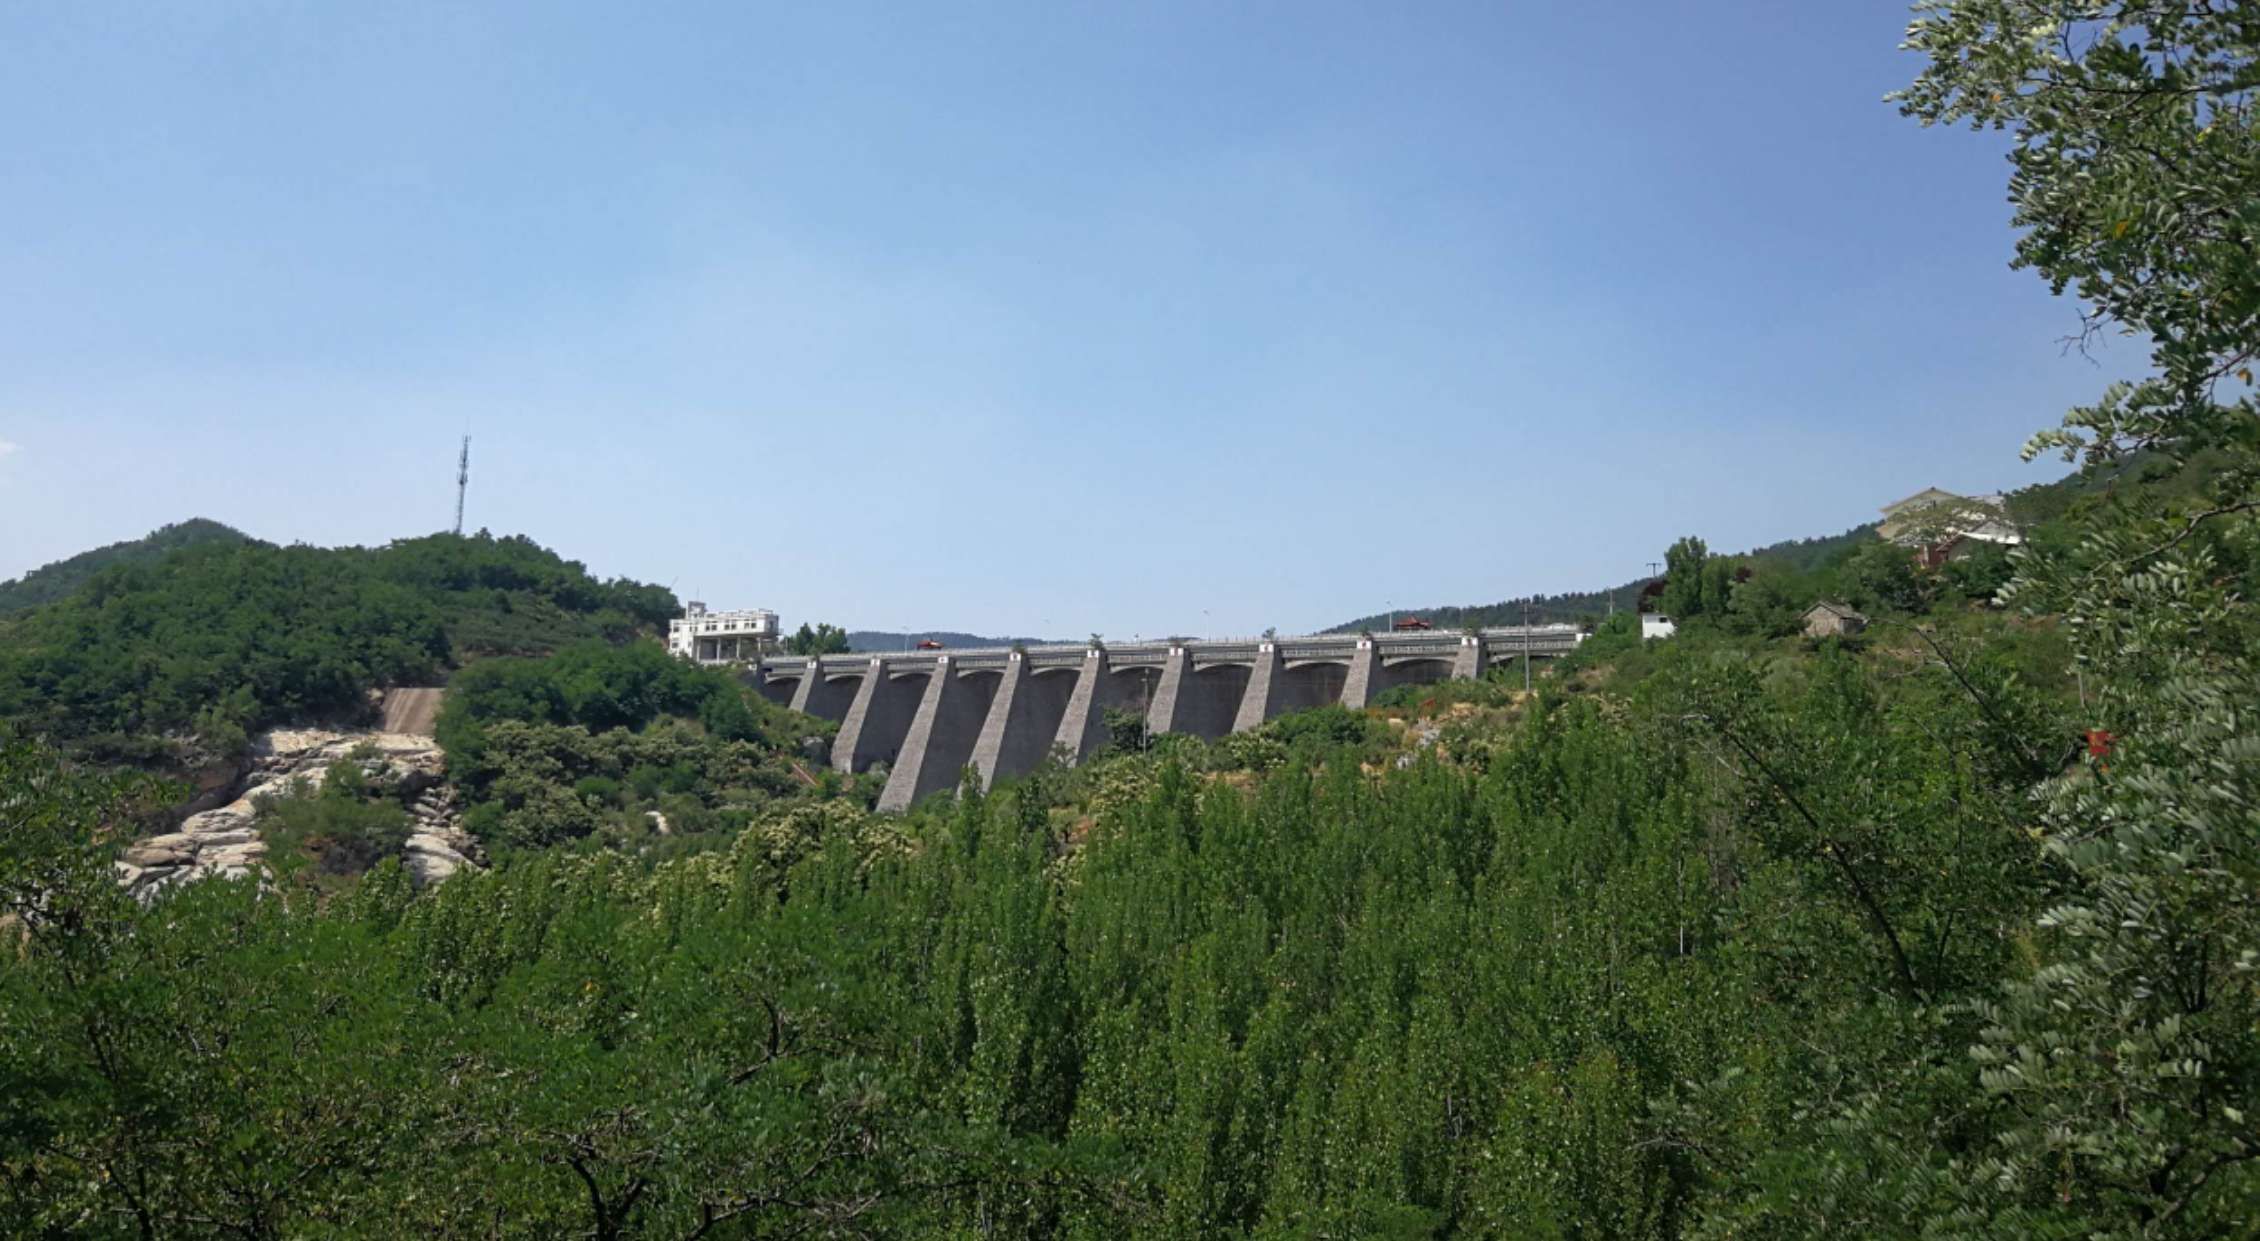 淌水崖水库位于临朐最南边的九山镇境内.